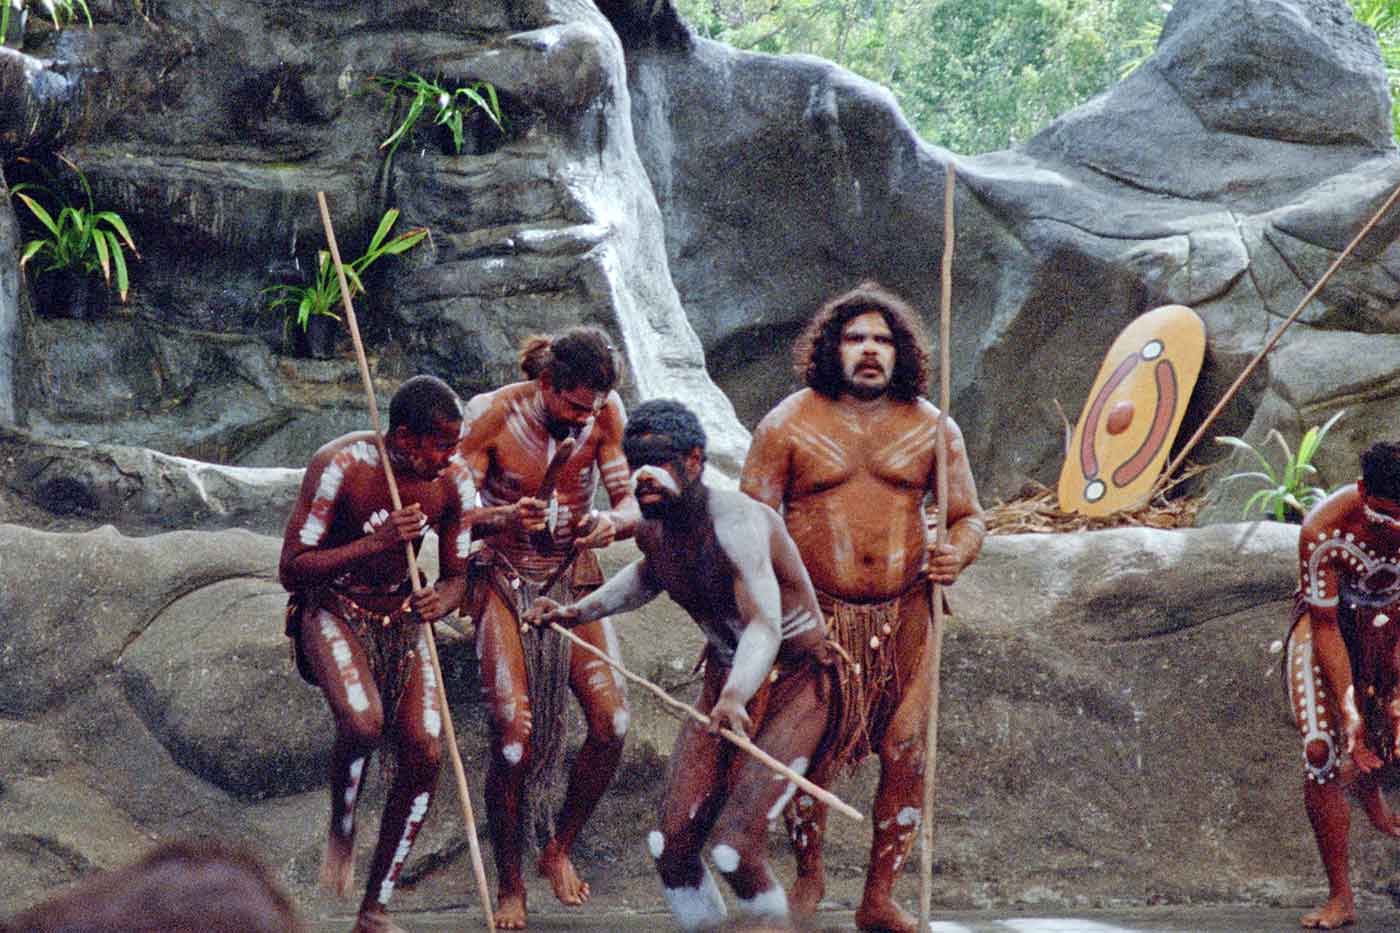 Tjapukai Aboriginal Cultural Park